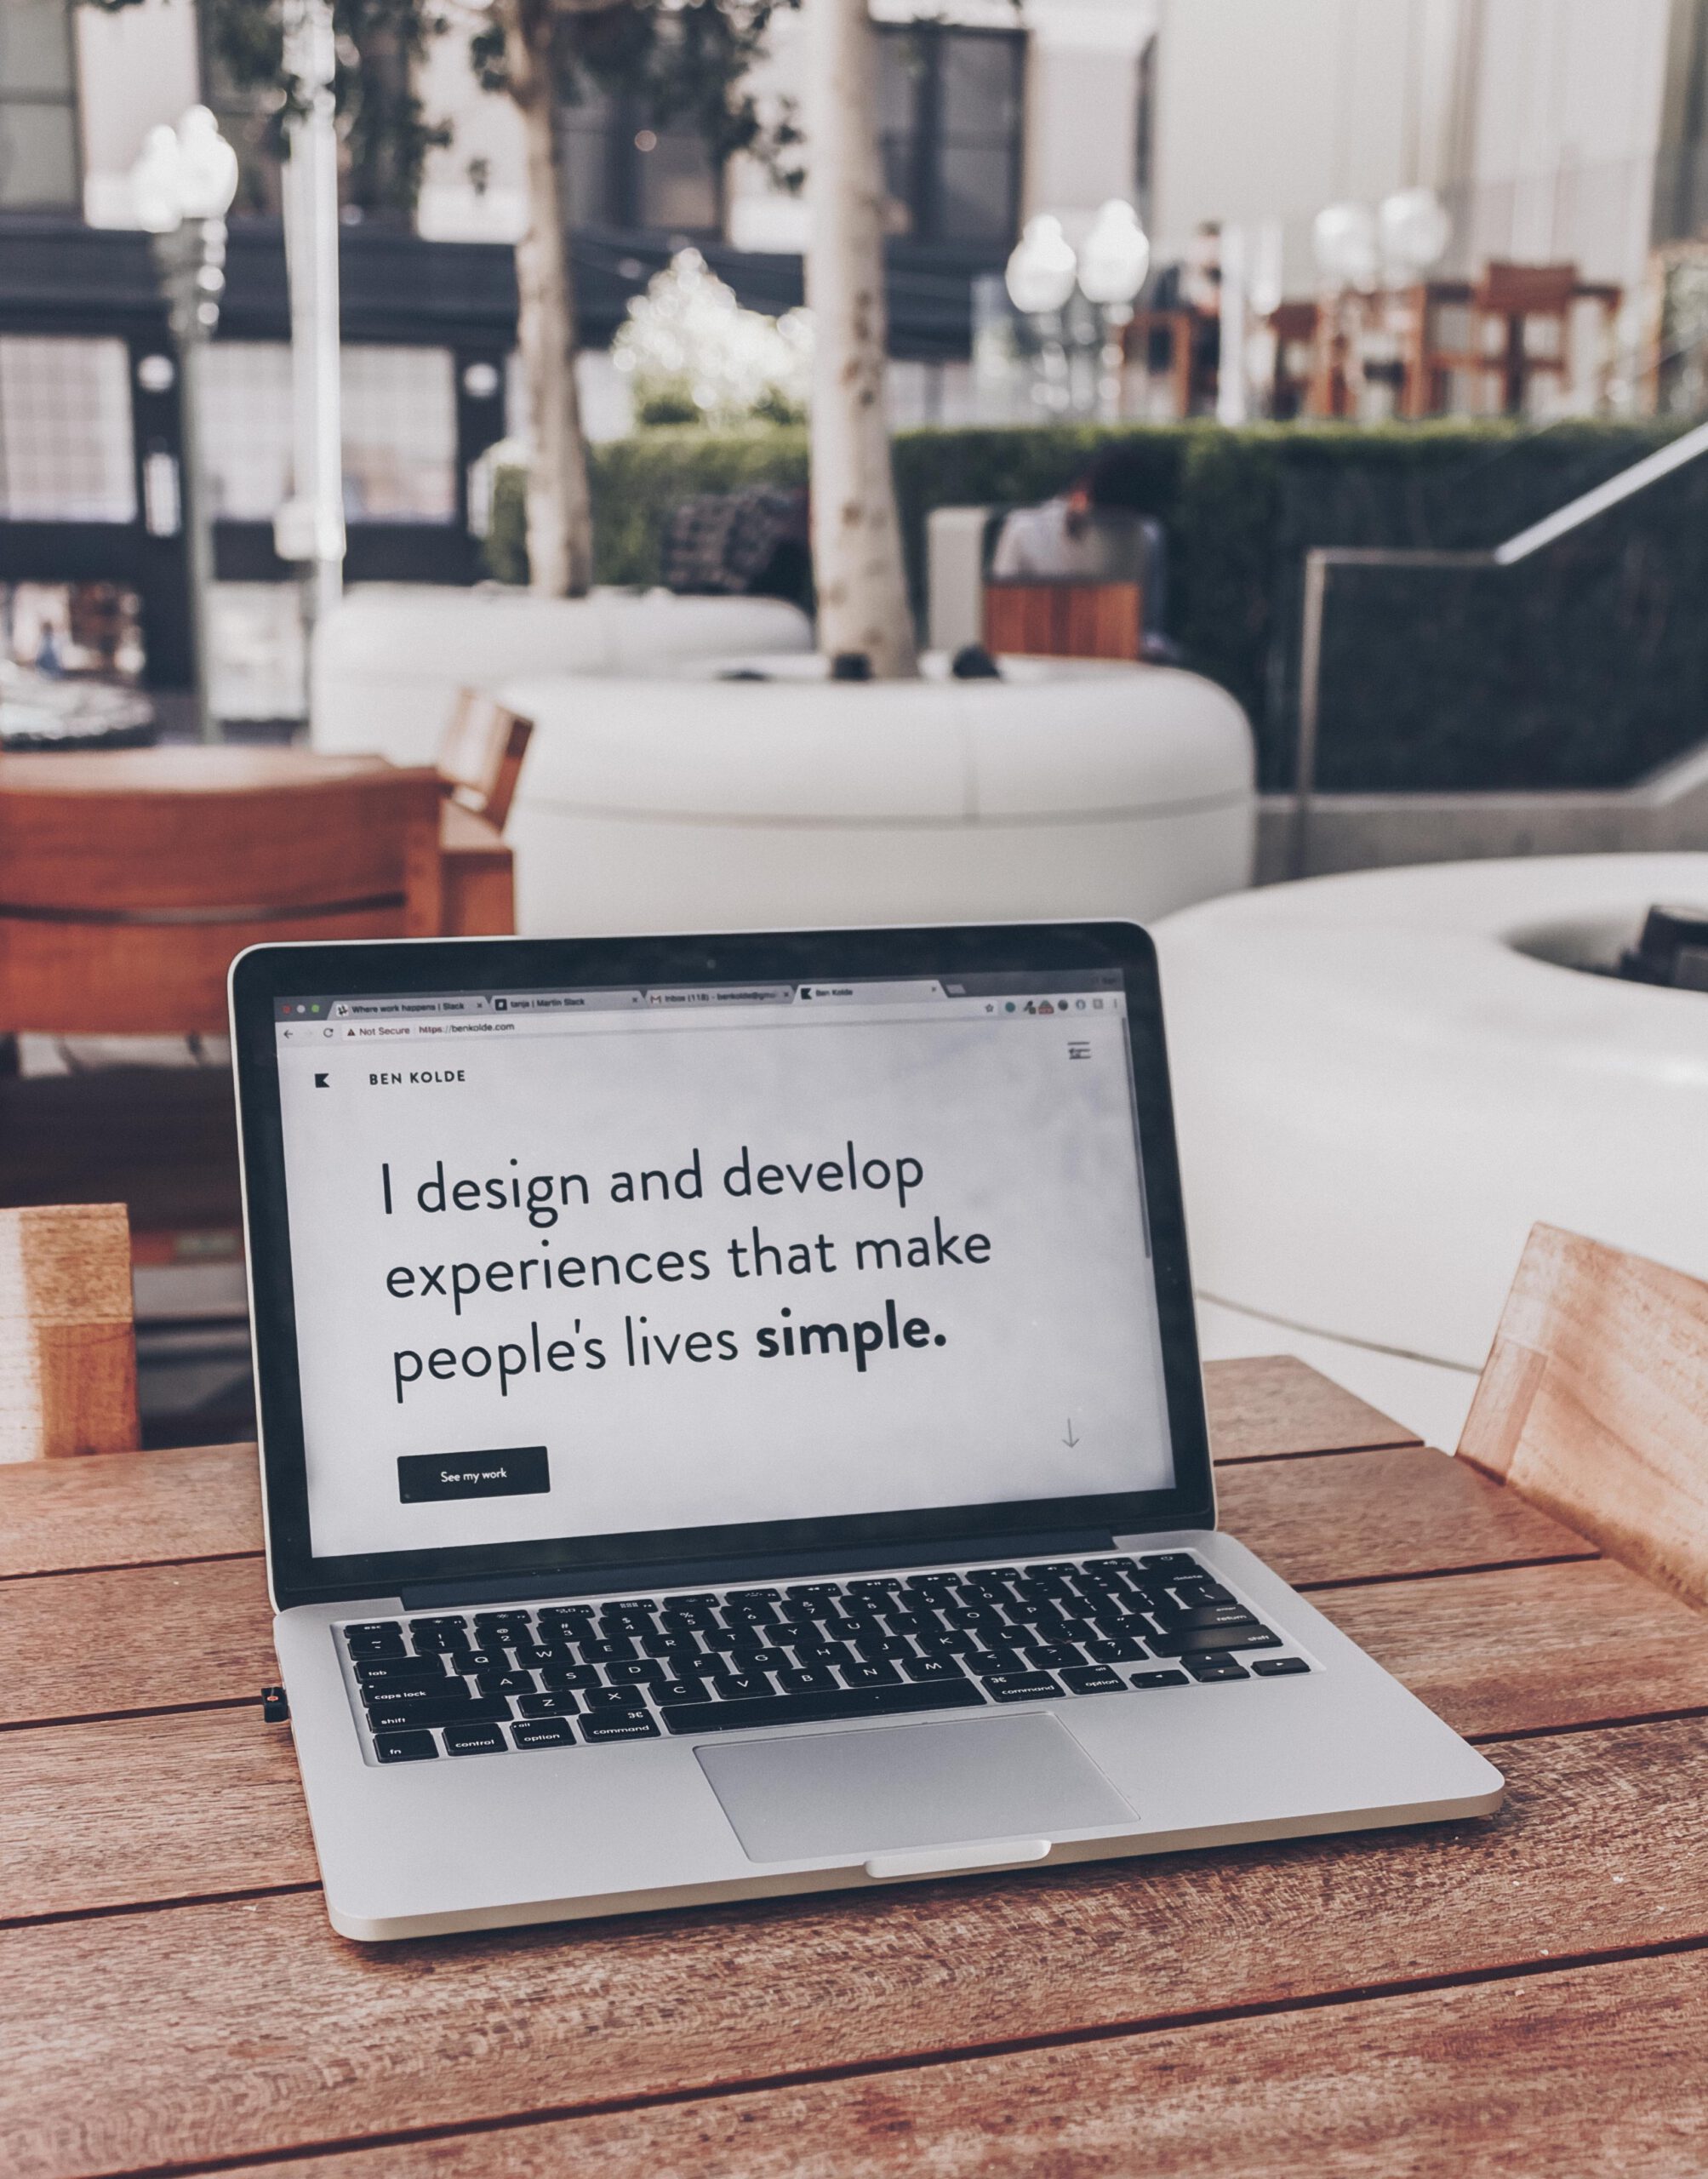 Fotografía en la que se ve un portátil con el texto "I design and develop experiences that make people's lives simple"